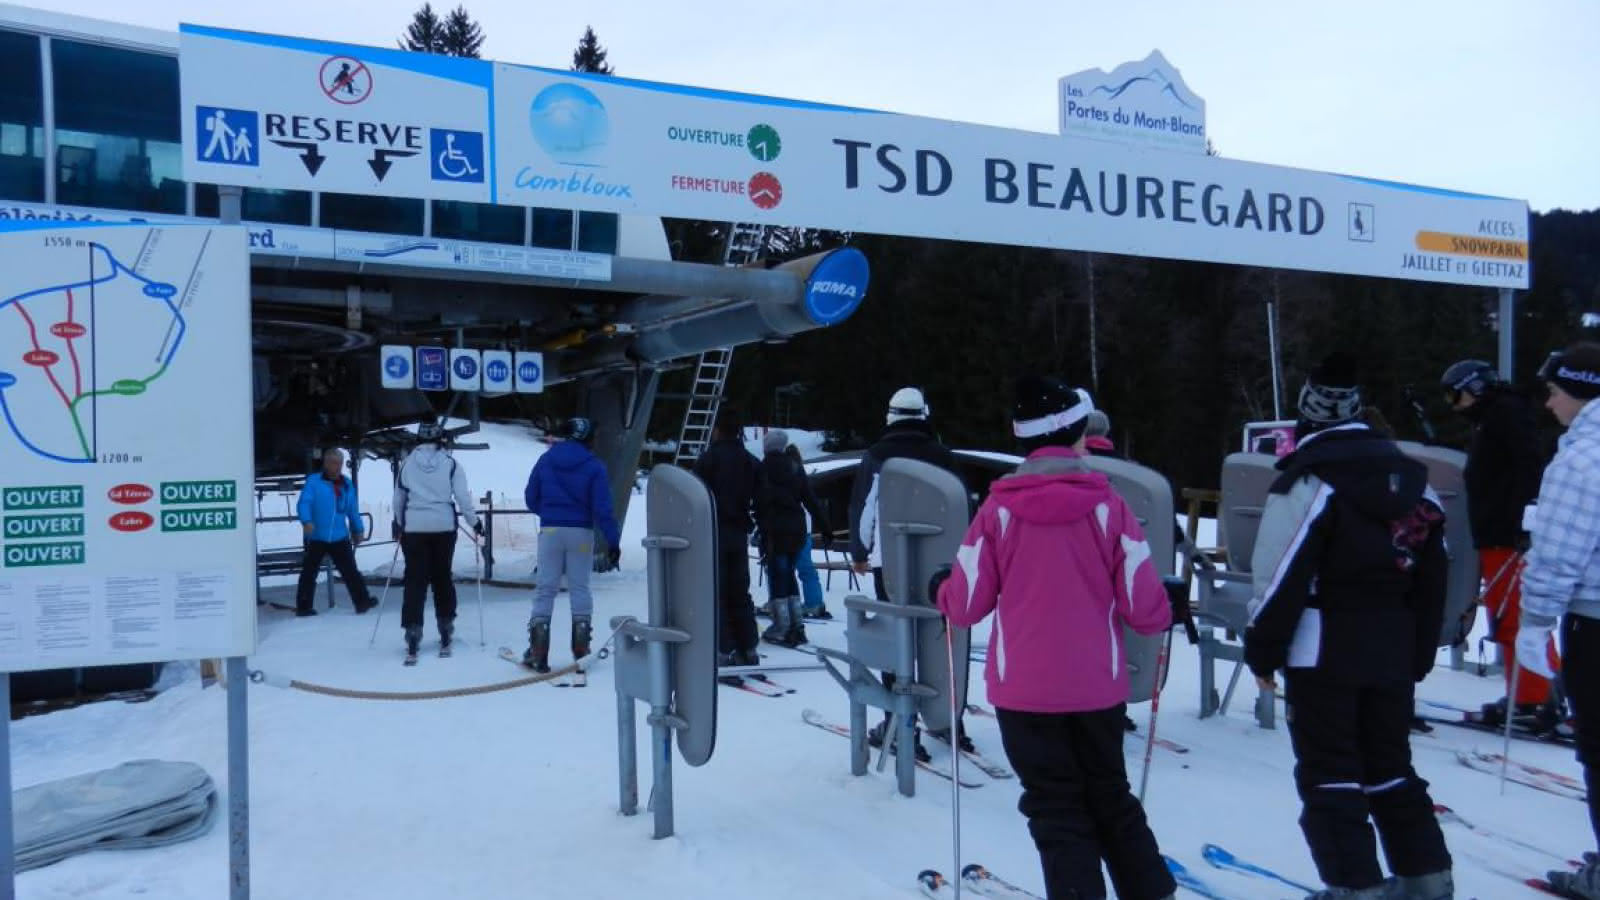 Couloir de gauche réservé pour le handi-ski -télésiège de Beauregard